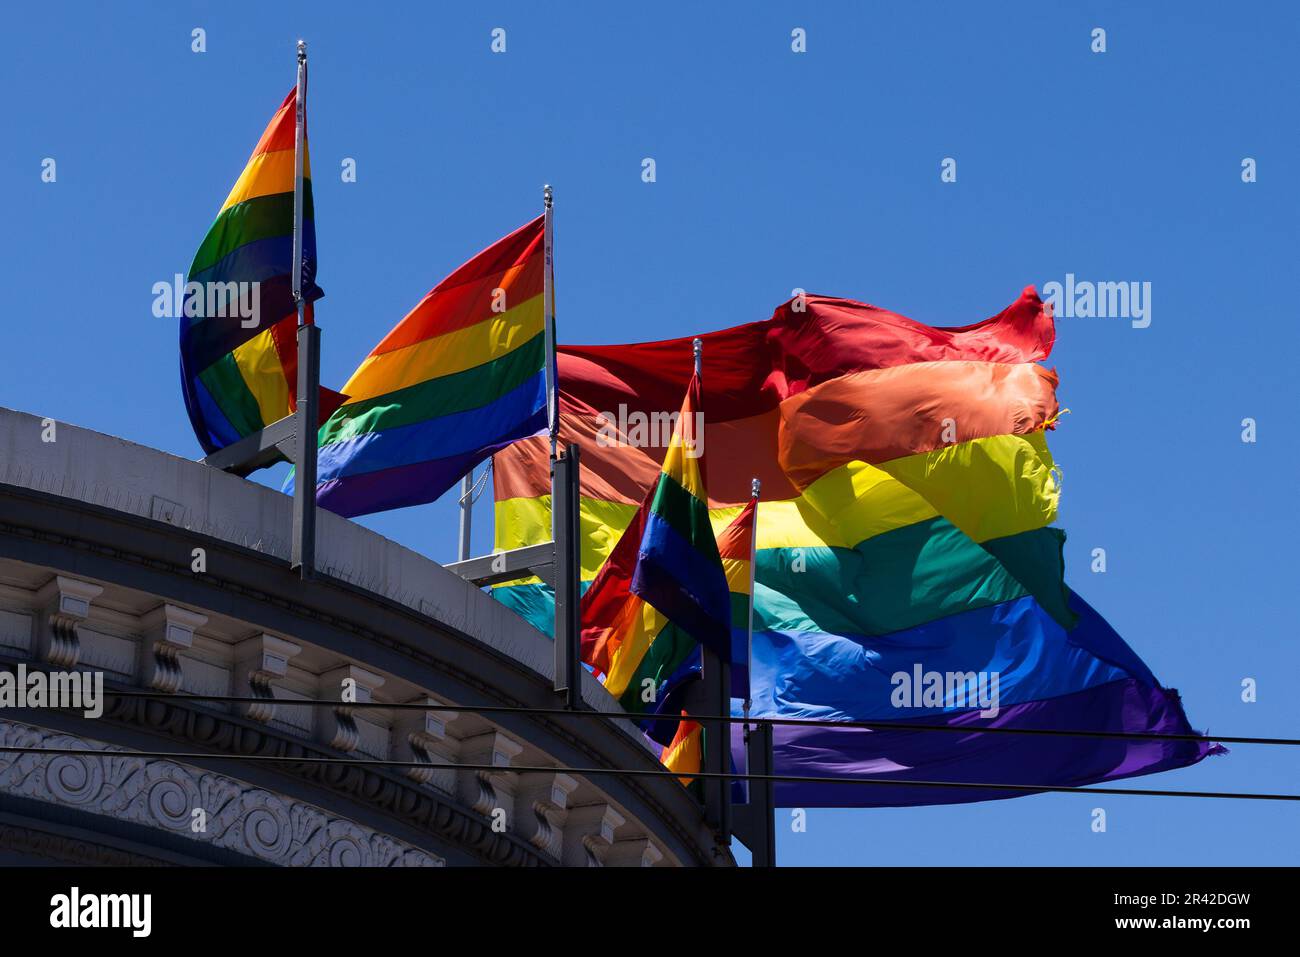 Des drapeaux arc-en-ciel éclatants dans un ciel bleu. Le quartier de Castro, San Francisco. Des drapeaux multicolores flottent dans le vent par temps ensoleillé. Banque D'Images